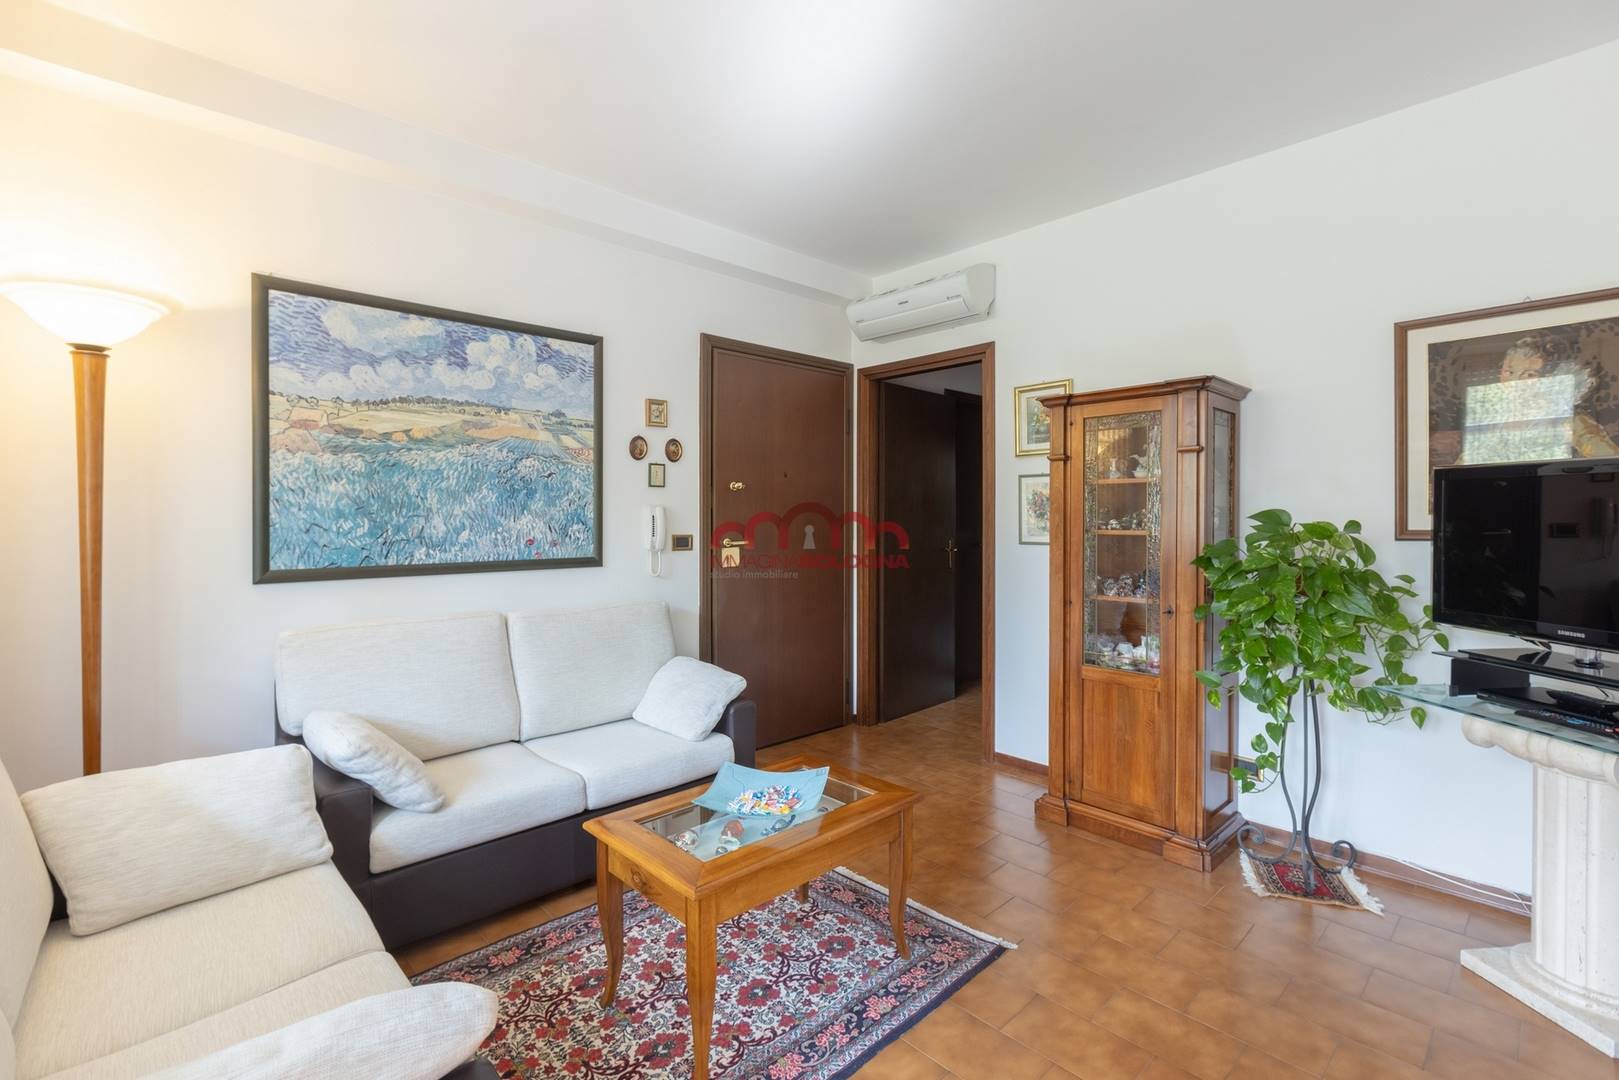 Appartamento in vendita a Casalecchio di Reno, 4 locali, prezzo € 176.000 | CambioCasa.it